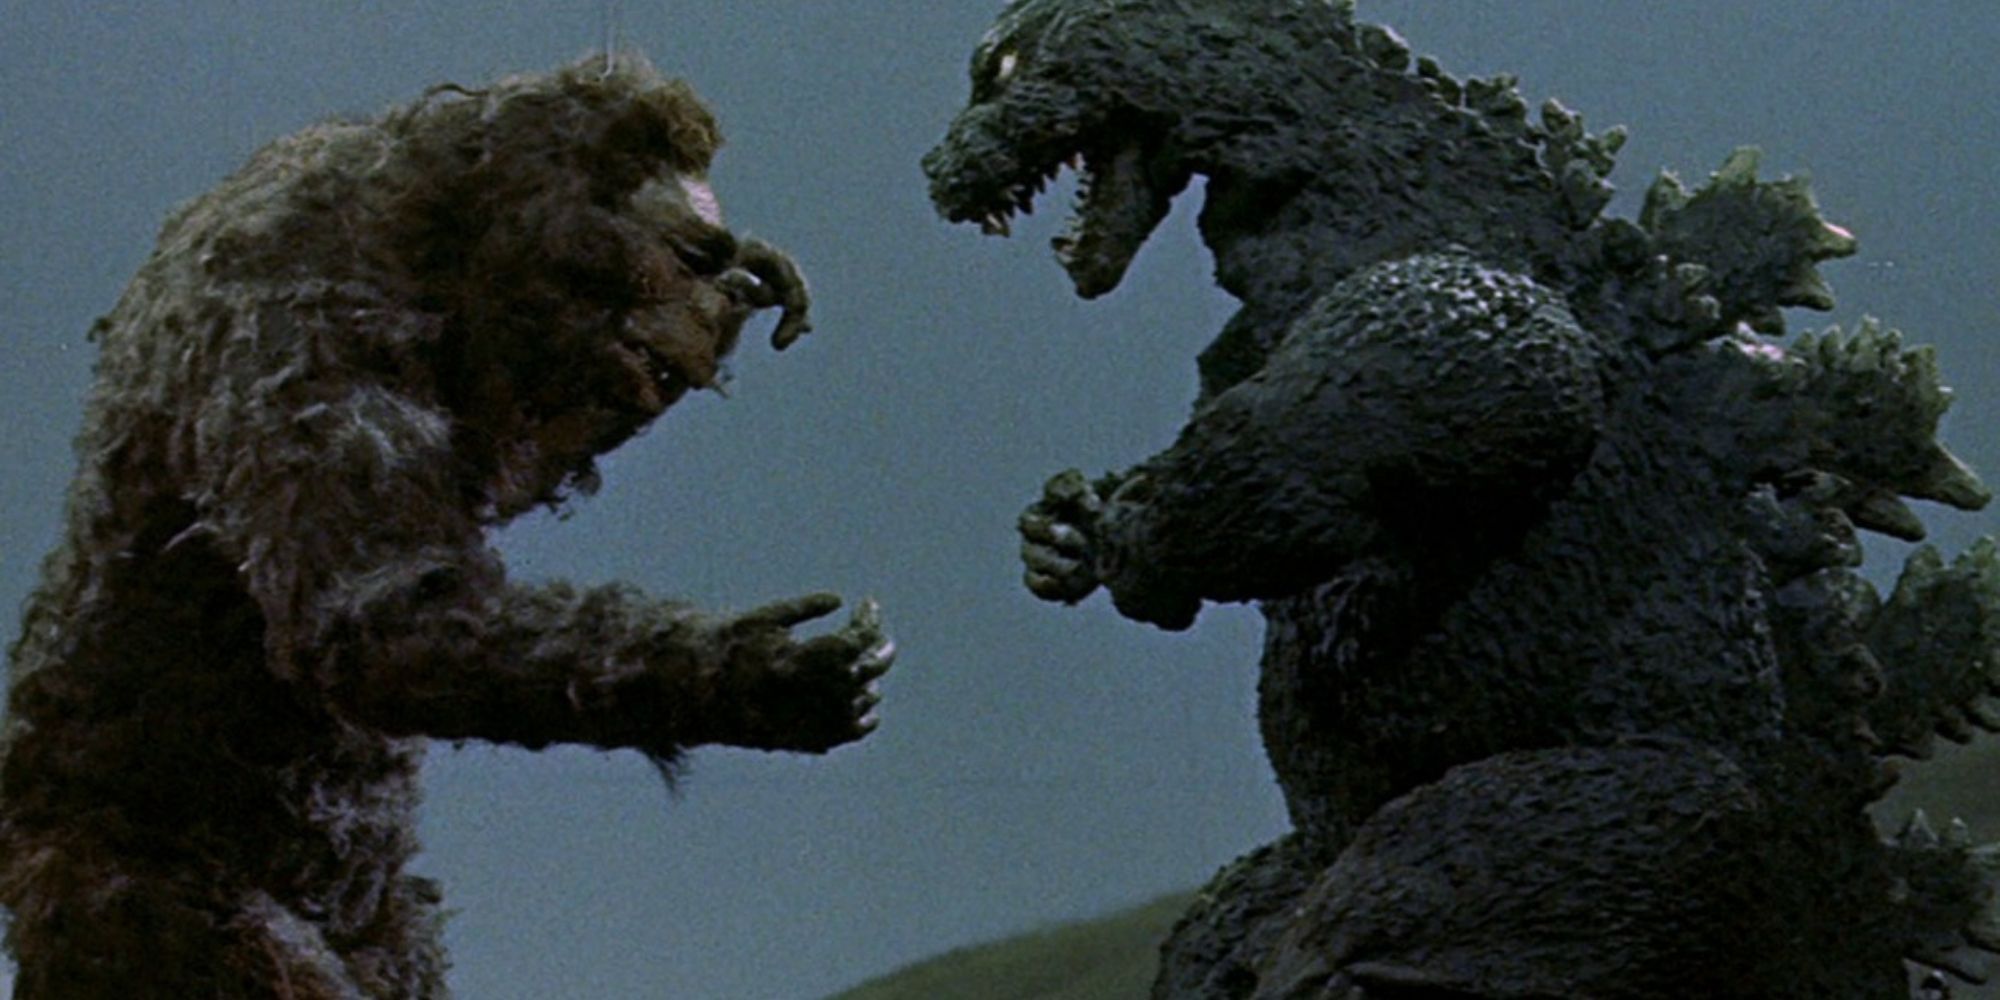 King Kong and Godzilla square off 